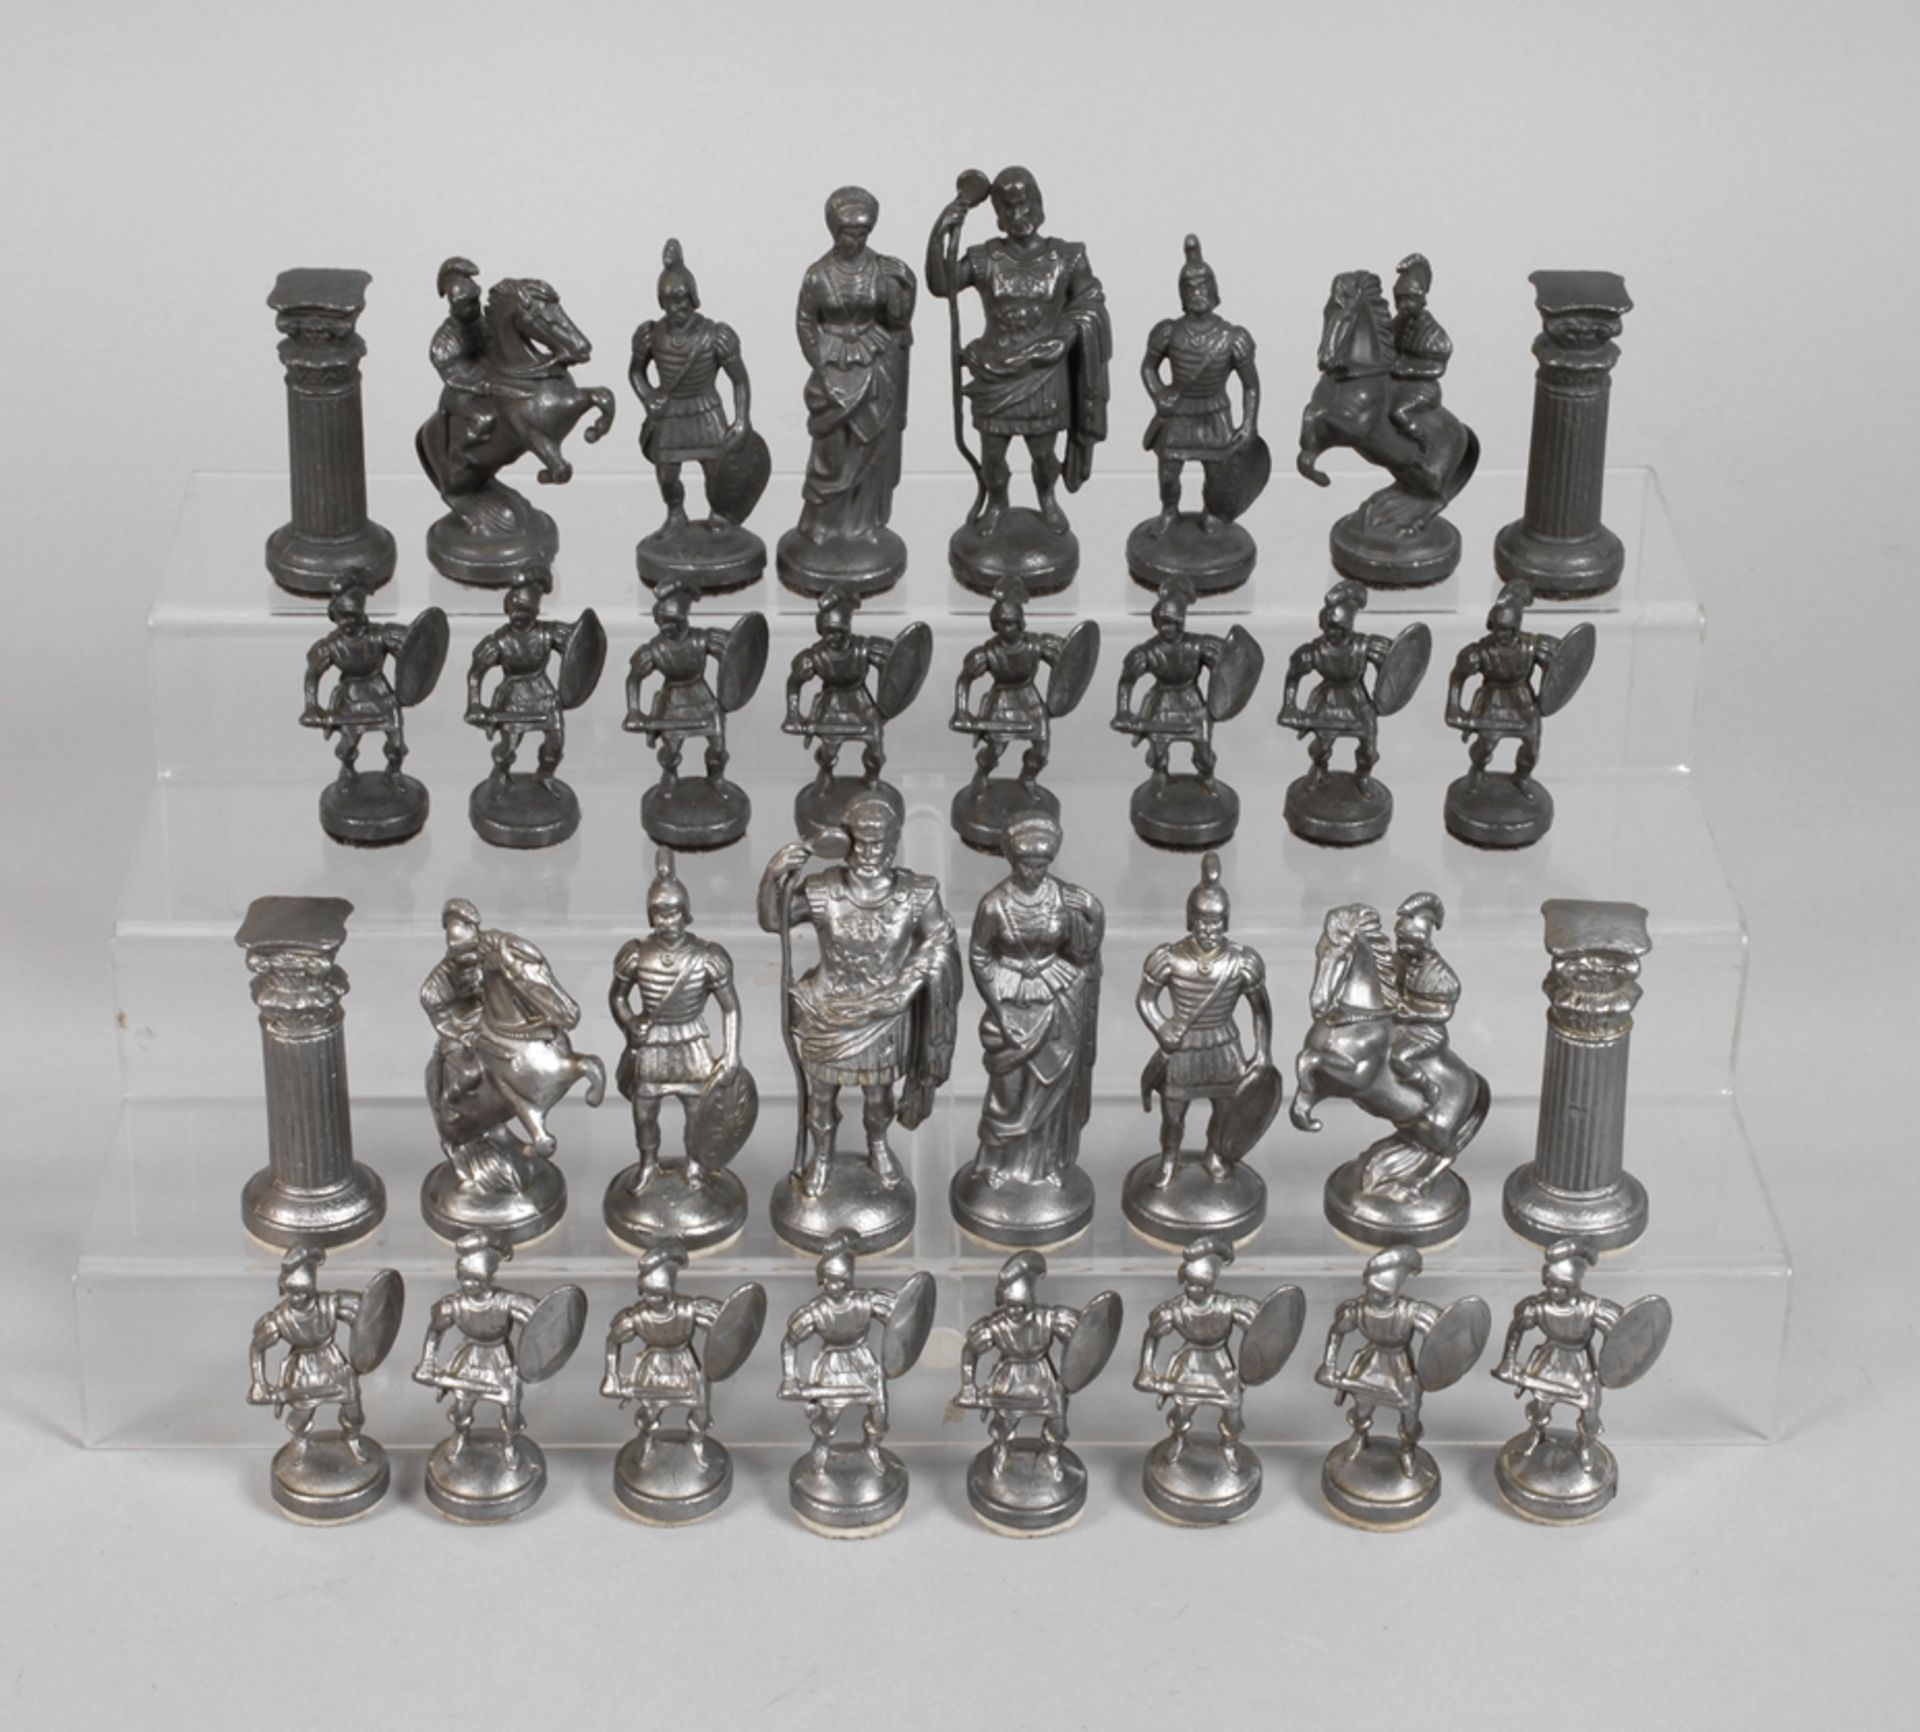 Pewter chess set